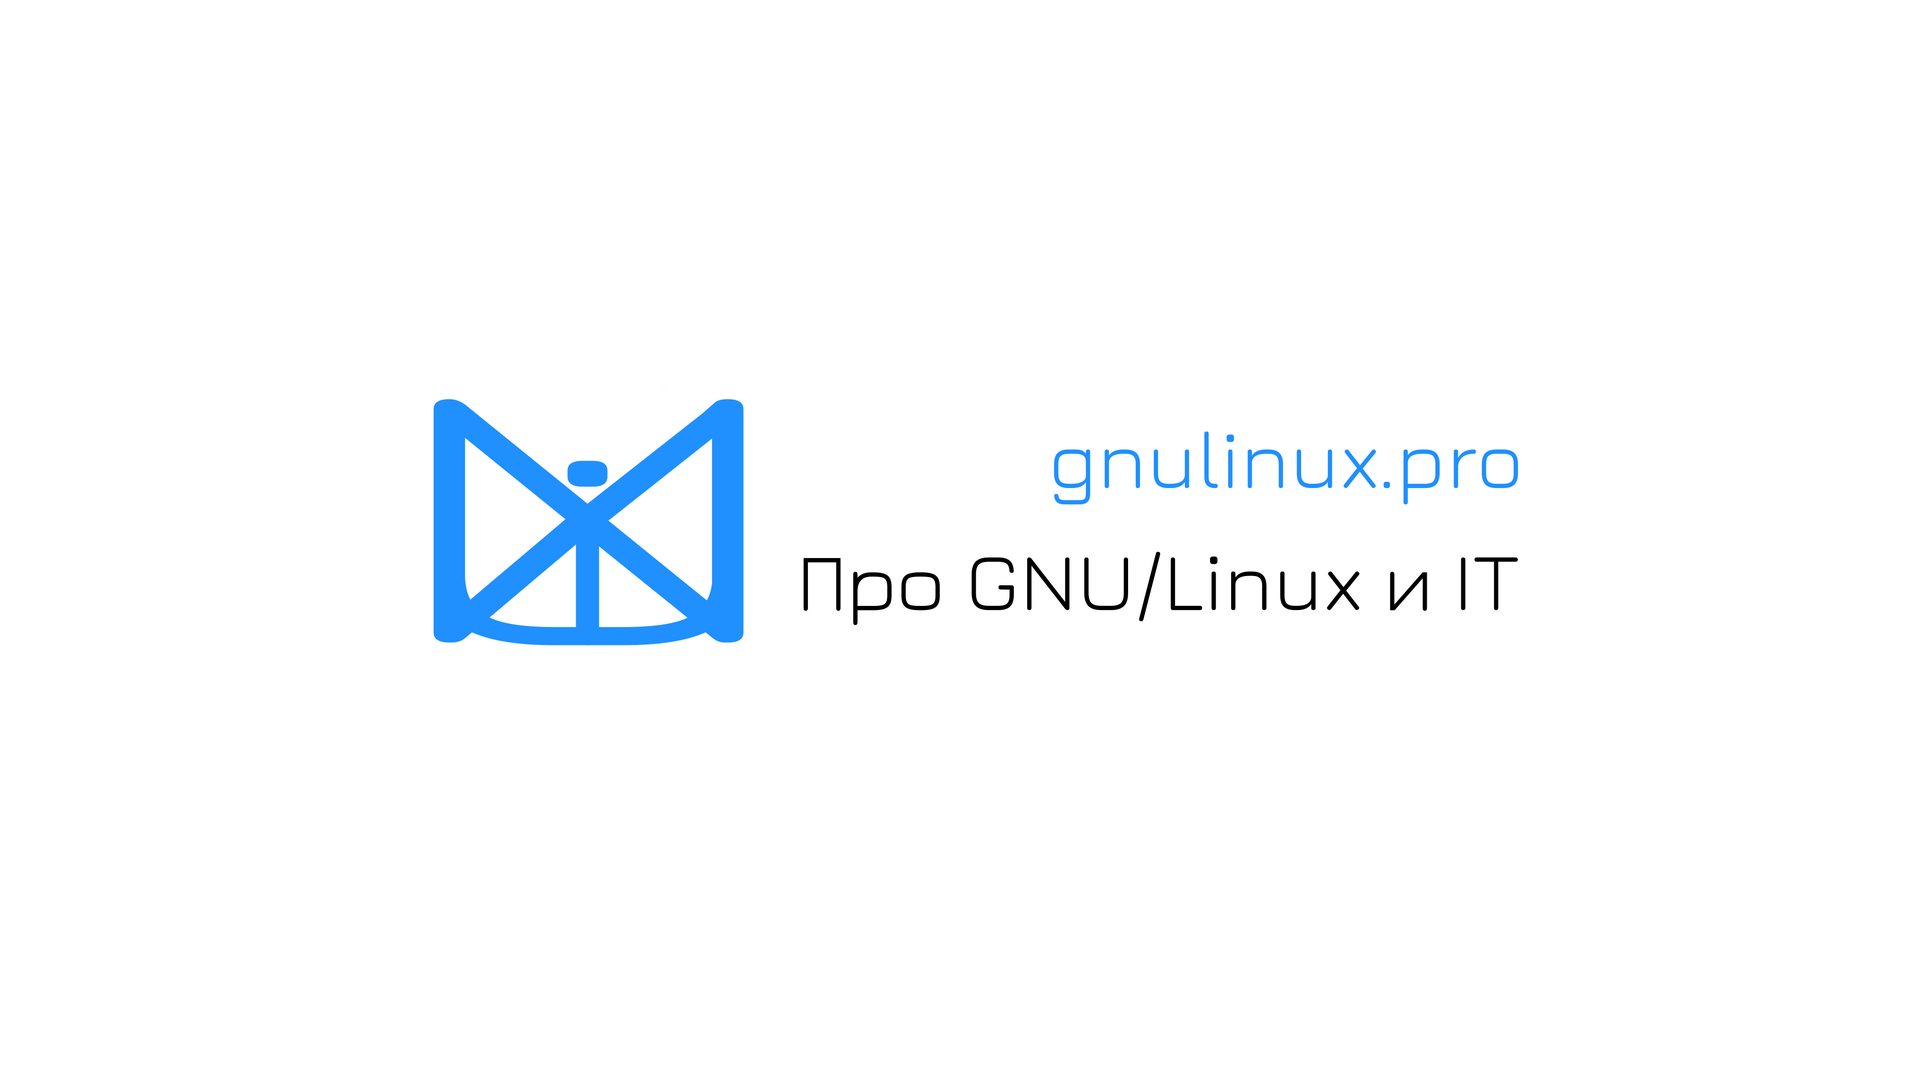 GNU/Linux Pro